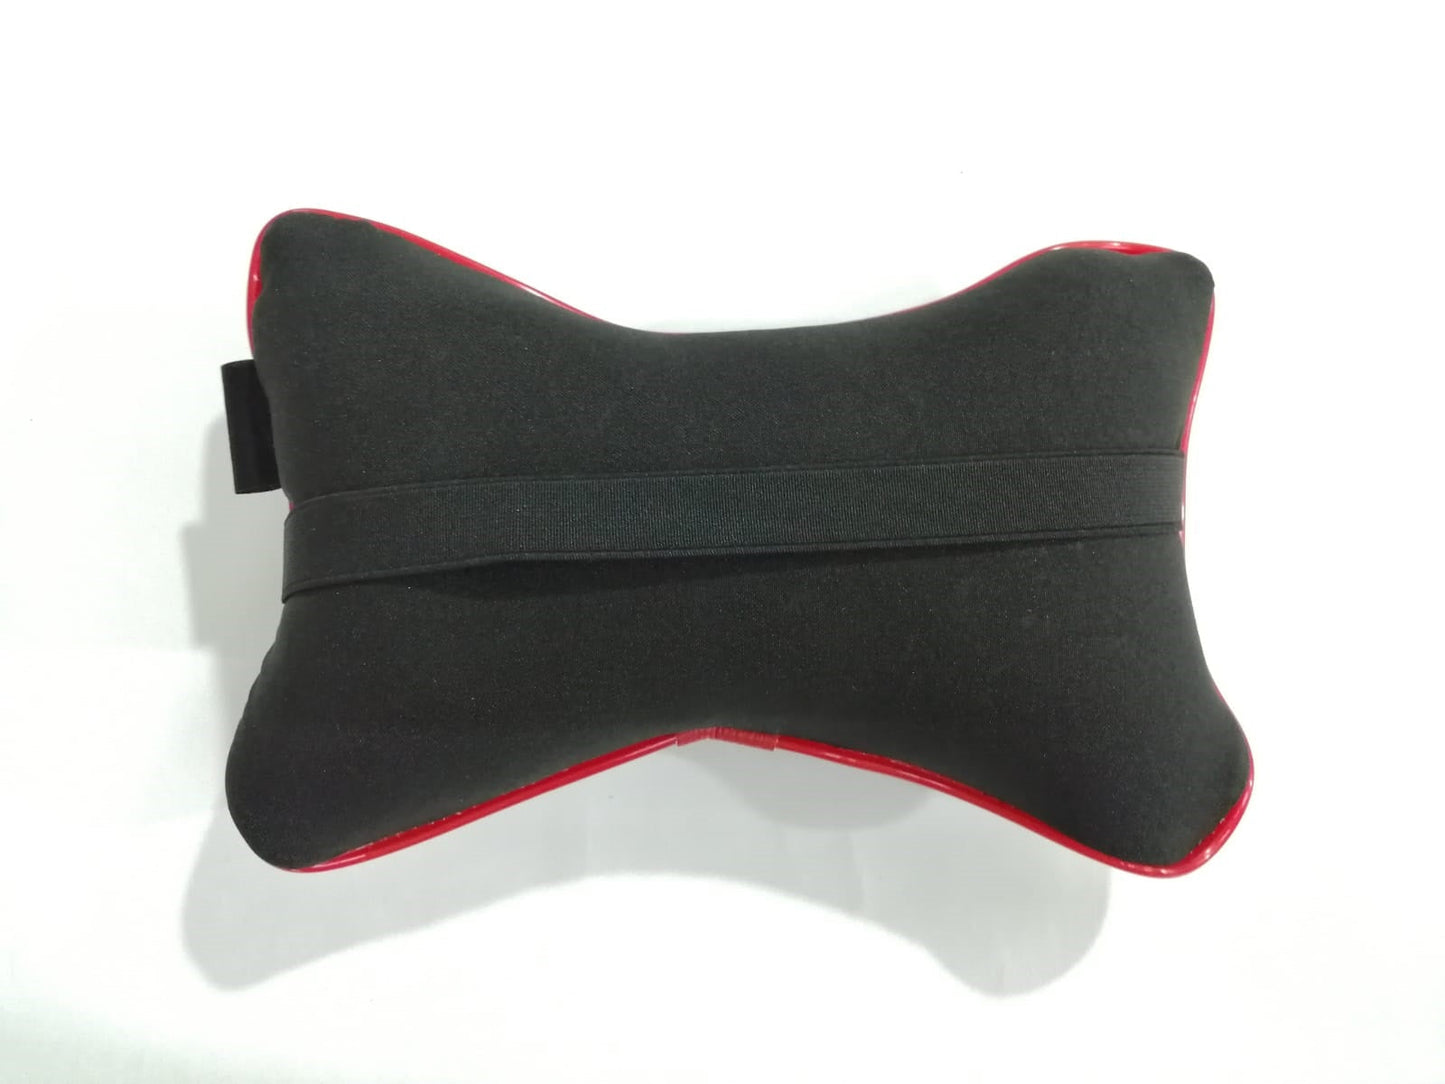 2x Isuzu car headrest Neck pillow Cushion